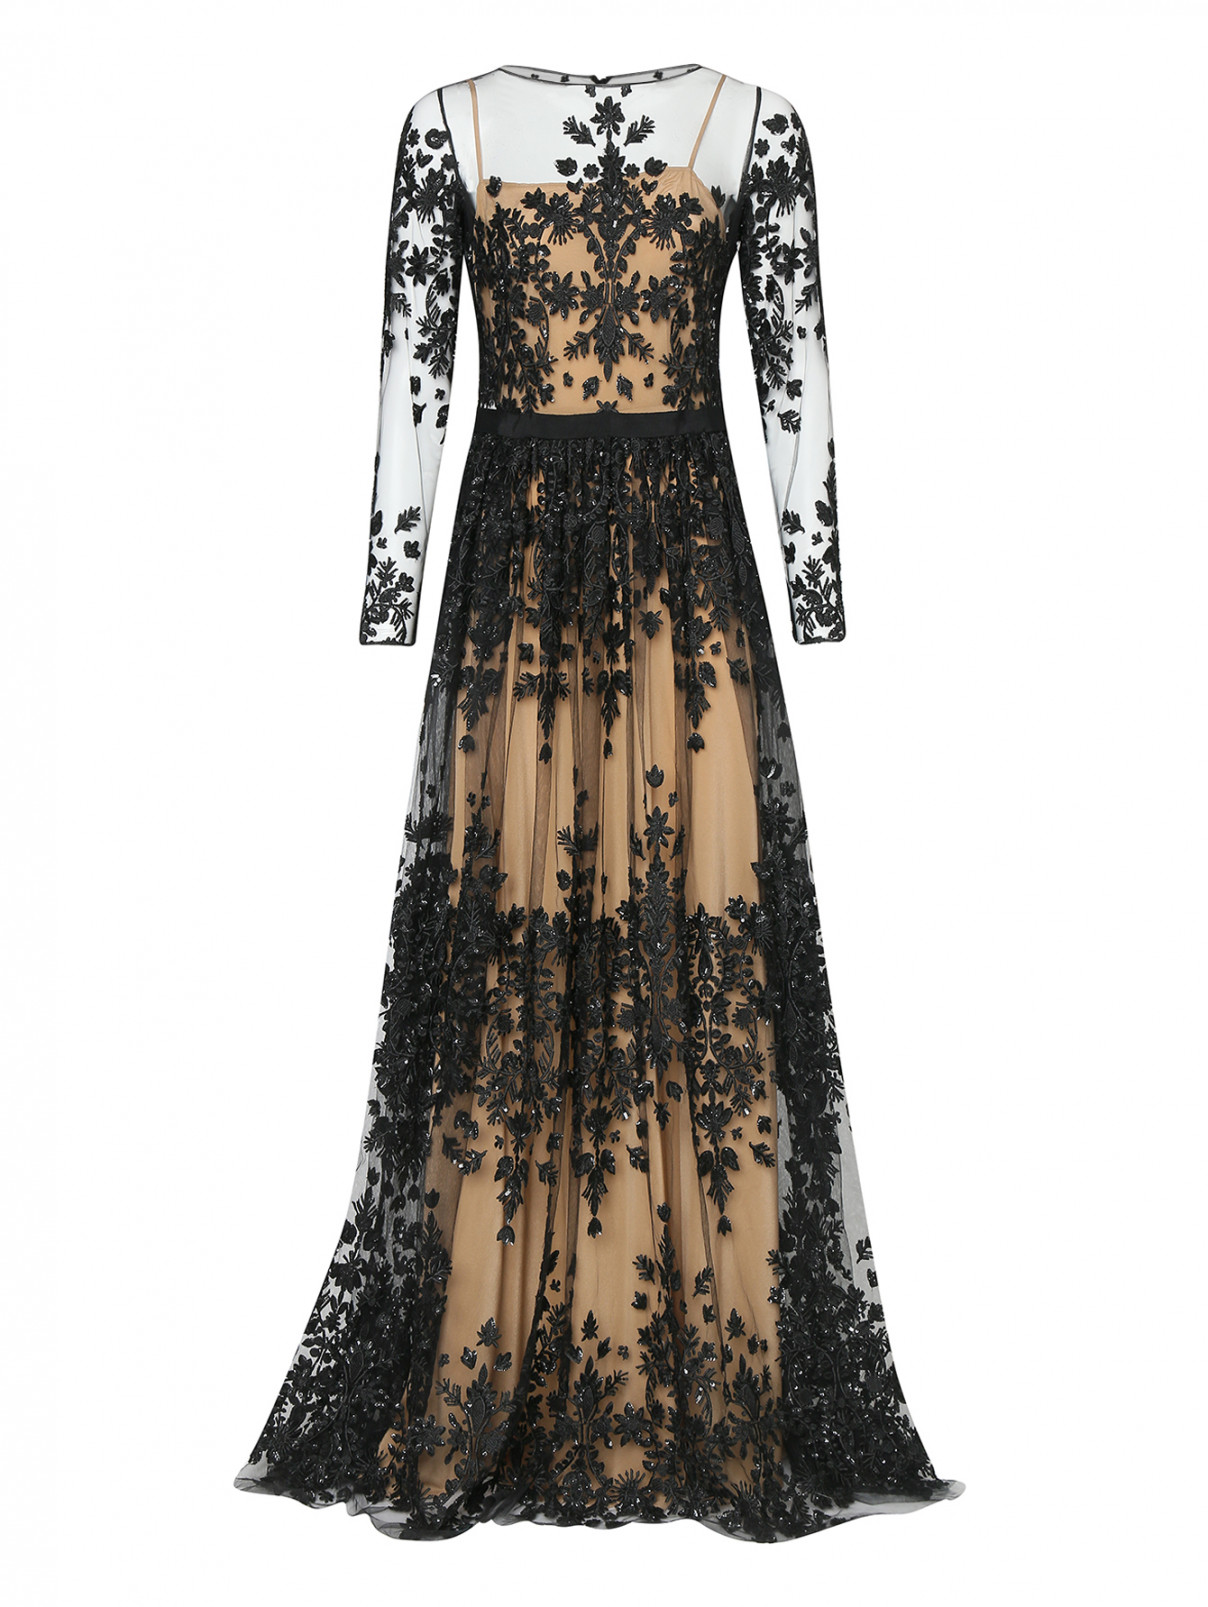 Платье-макси с декоративной вышивкой Zuhair Murad  –  Общий вид  – Цвет:  Черный